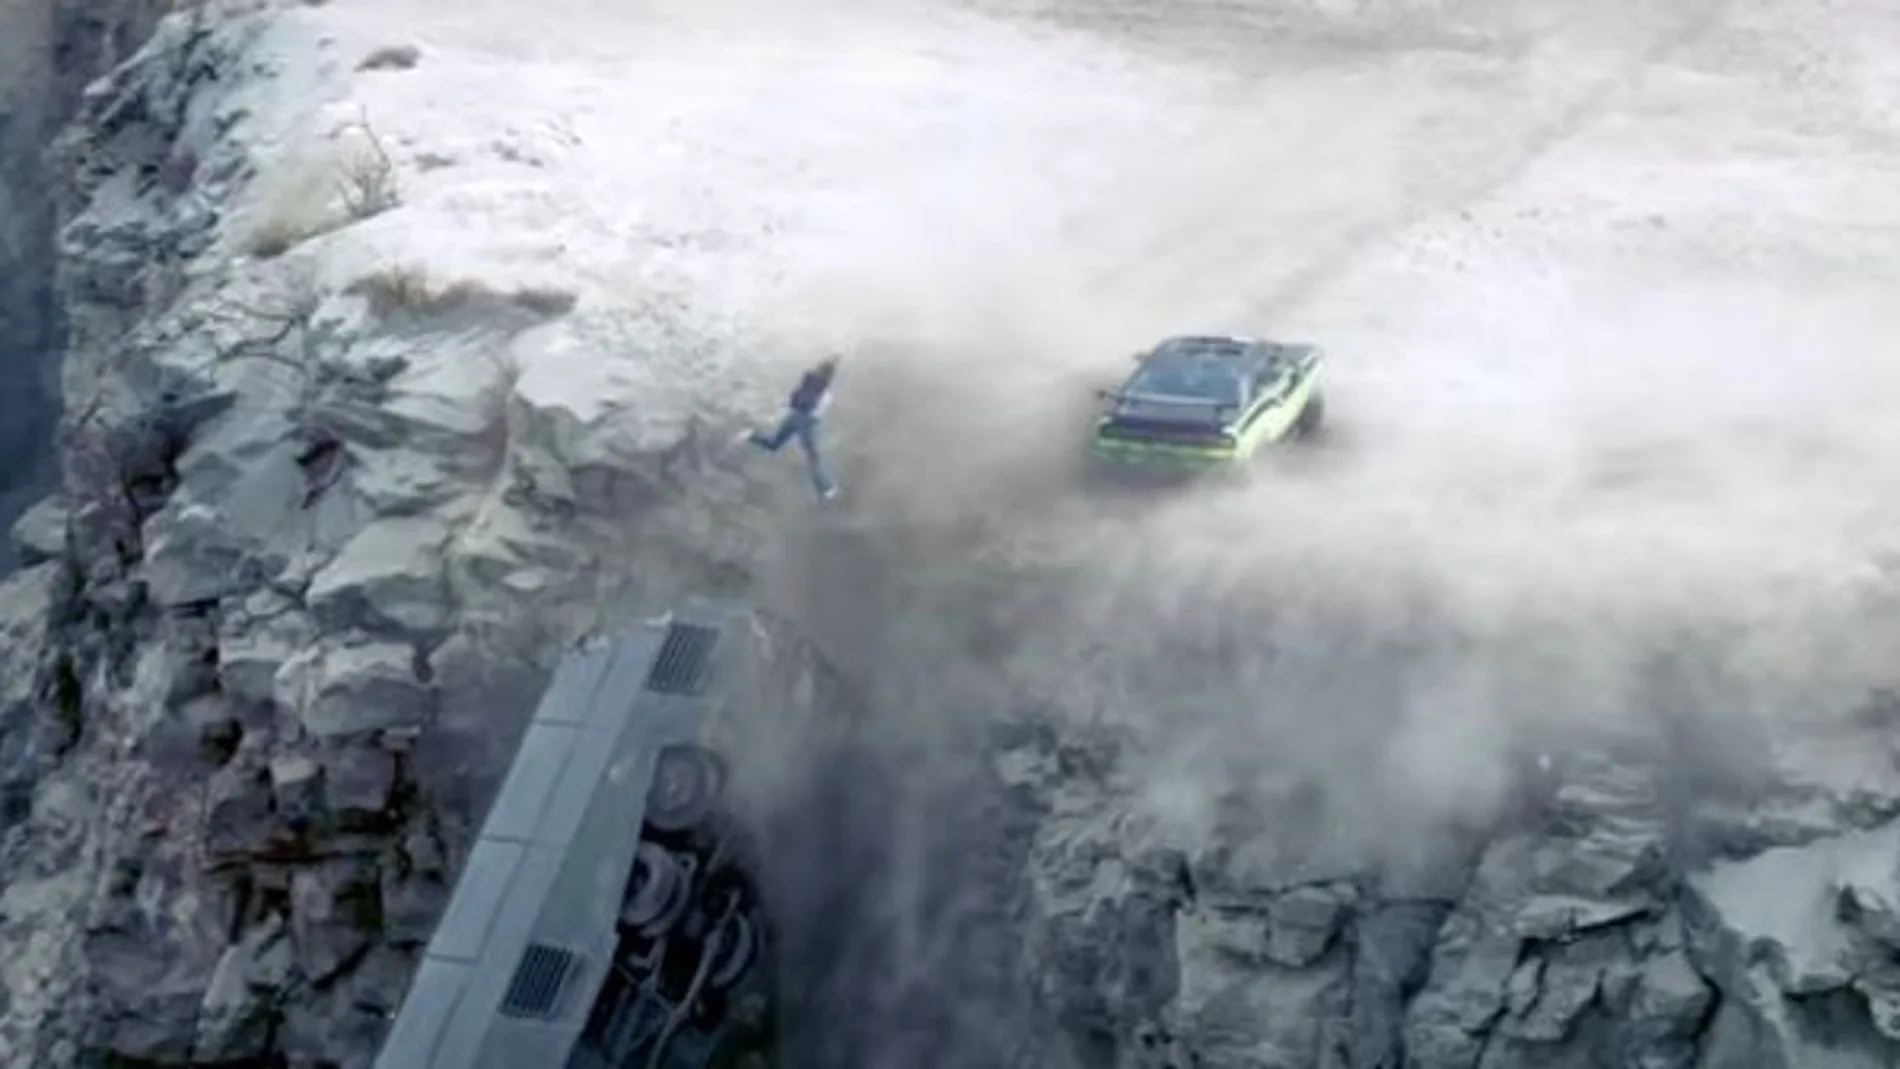 Paul Walker saltando del camión antes de caer precipicio abajo